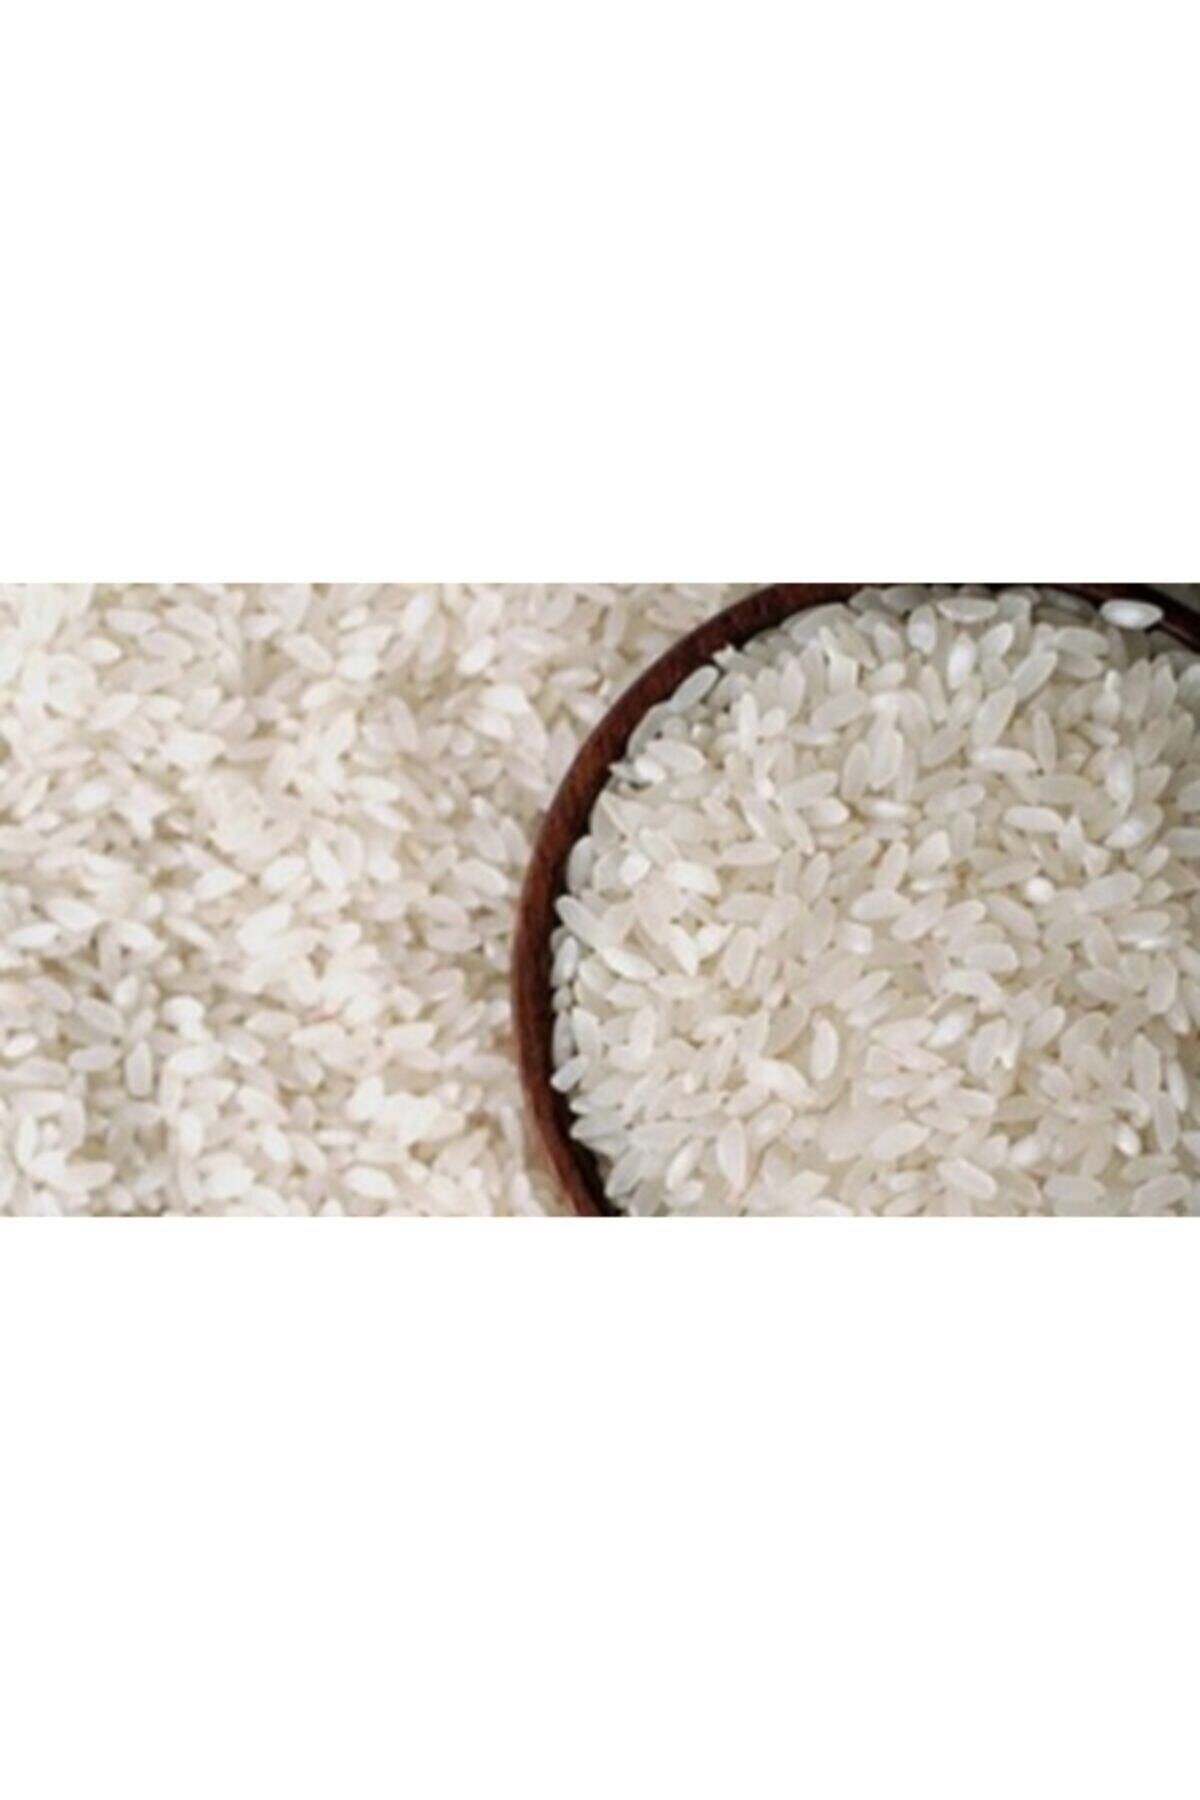 KAVASOĞLU Osmancık Pirinci 5 Kg